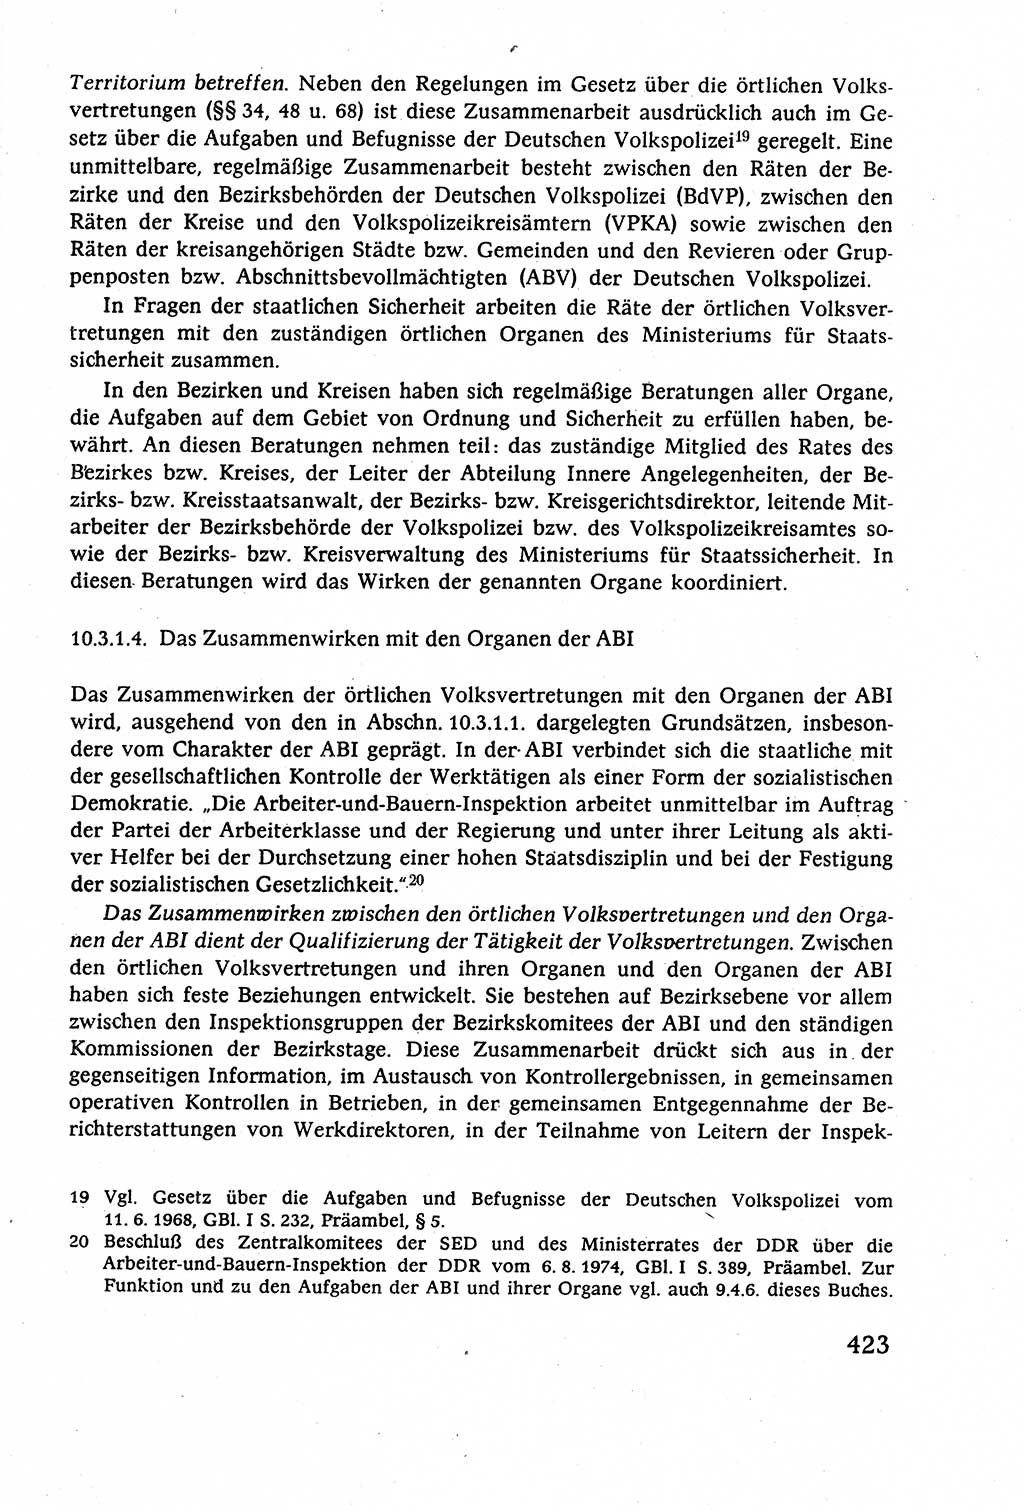 Staatsrecht der DDR (Deutsche Demokratische Republik), Lehrbuch 1977, Seite 423 (St.-R. DDR Lb. 1977, S. 423)